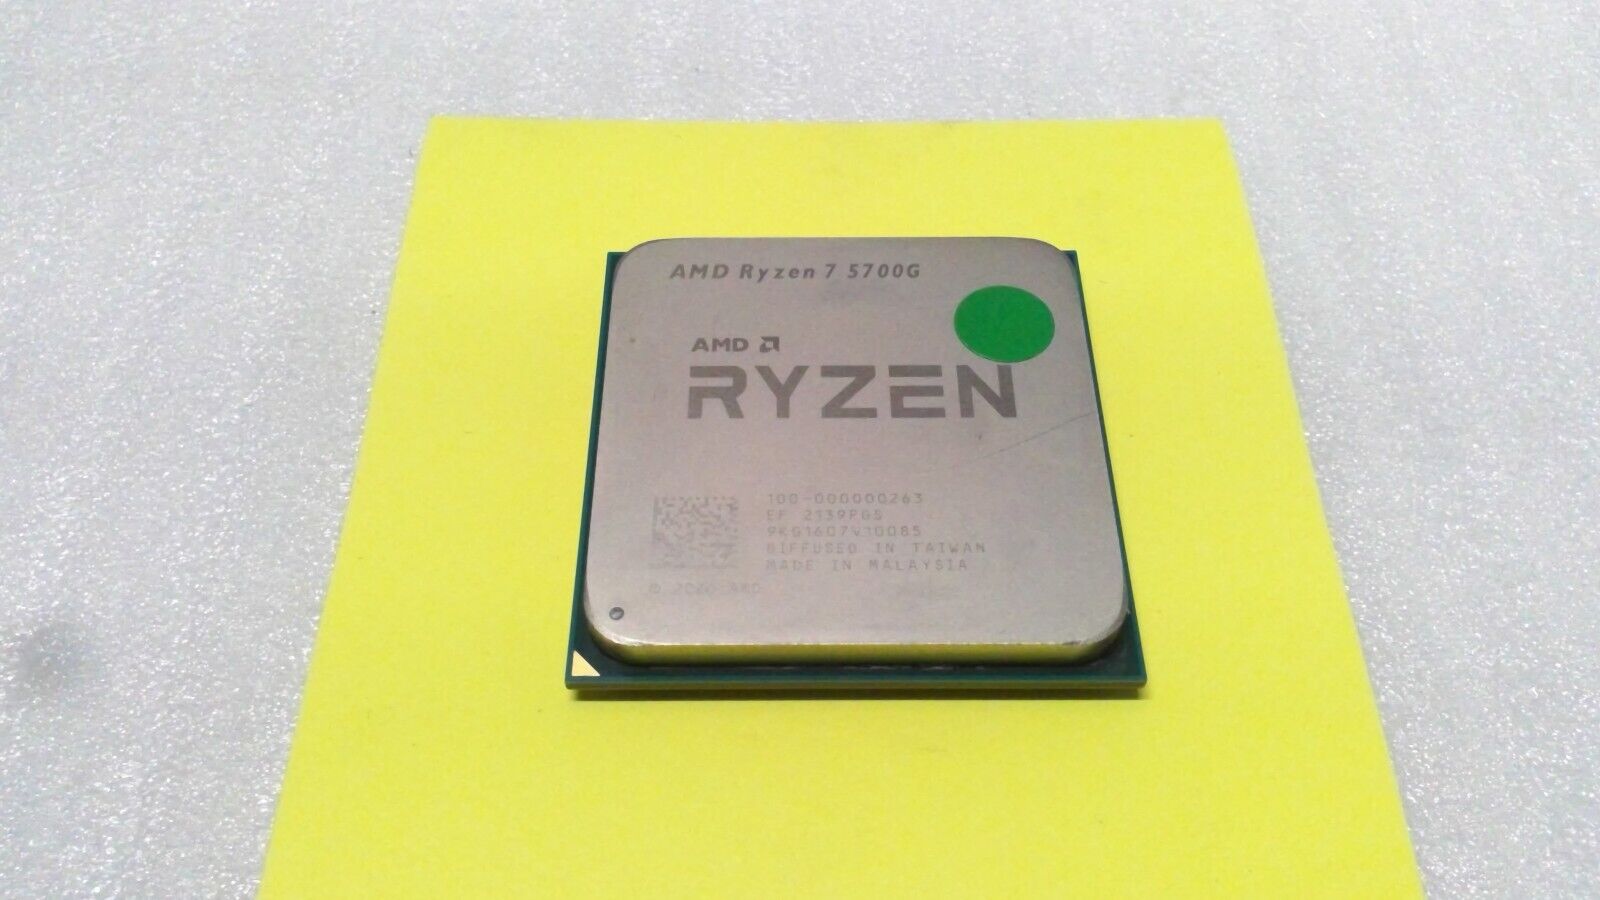 AMD Ryzen 7 5700G CPU Processor (4.6GHz, 8 Cores, Socket AM4)